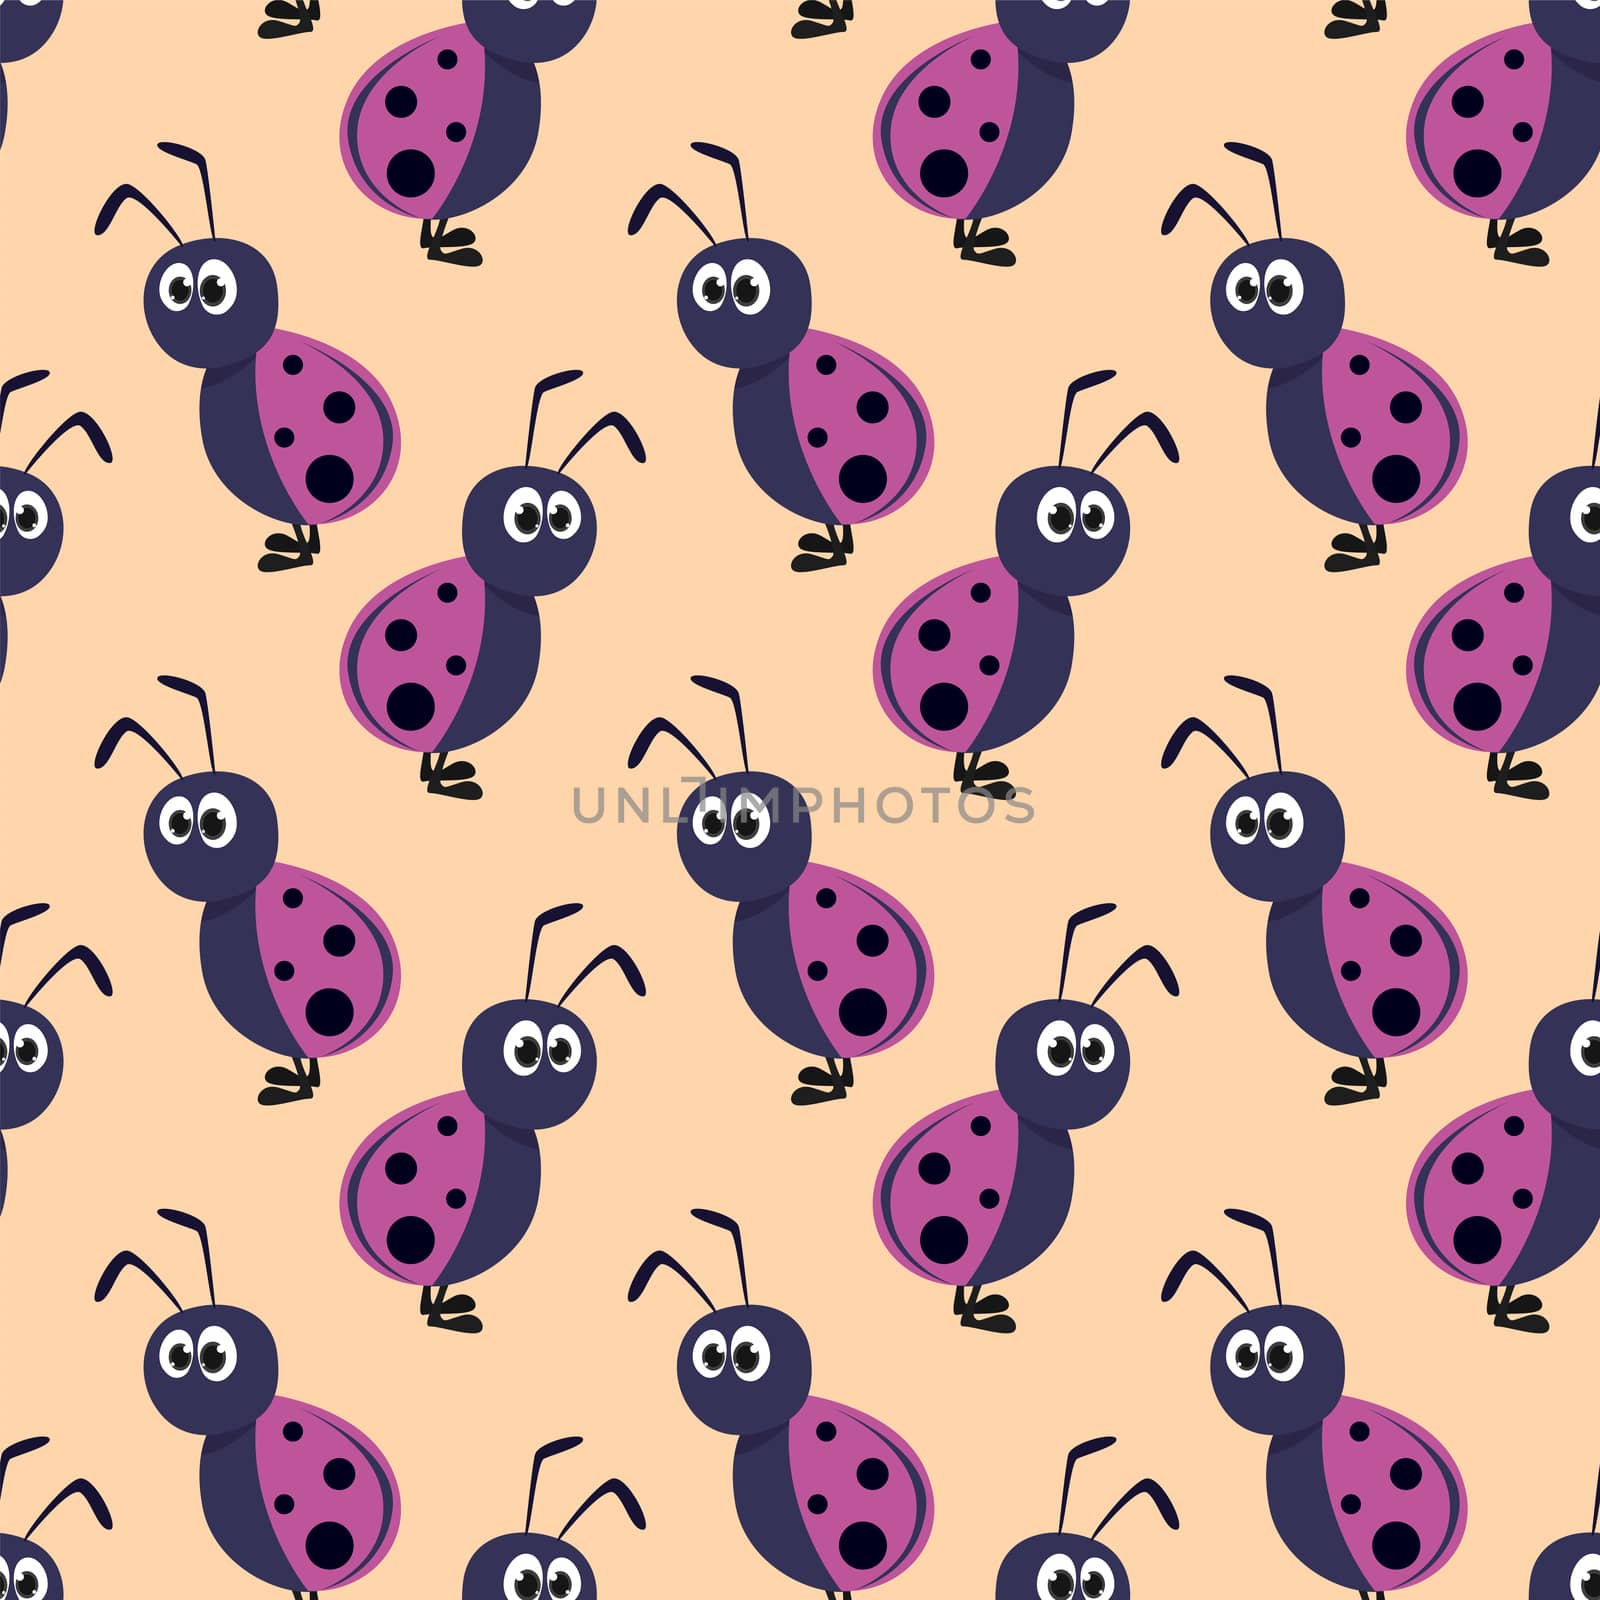 Ladybugs pattern , illustration, vector on white background